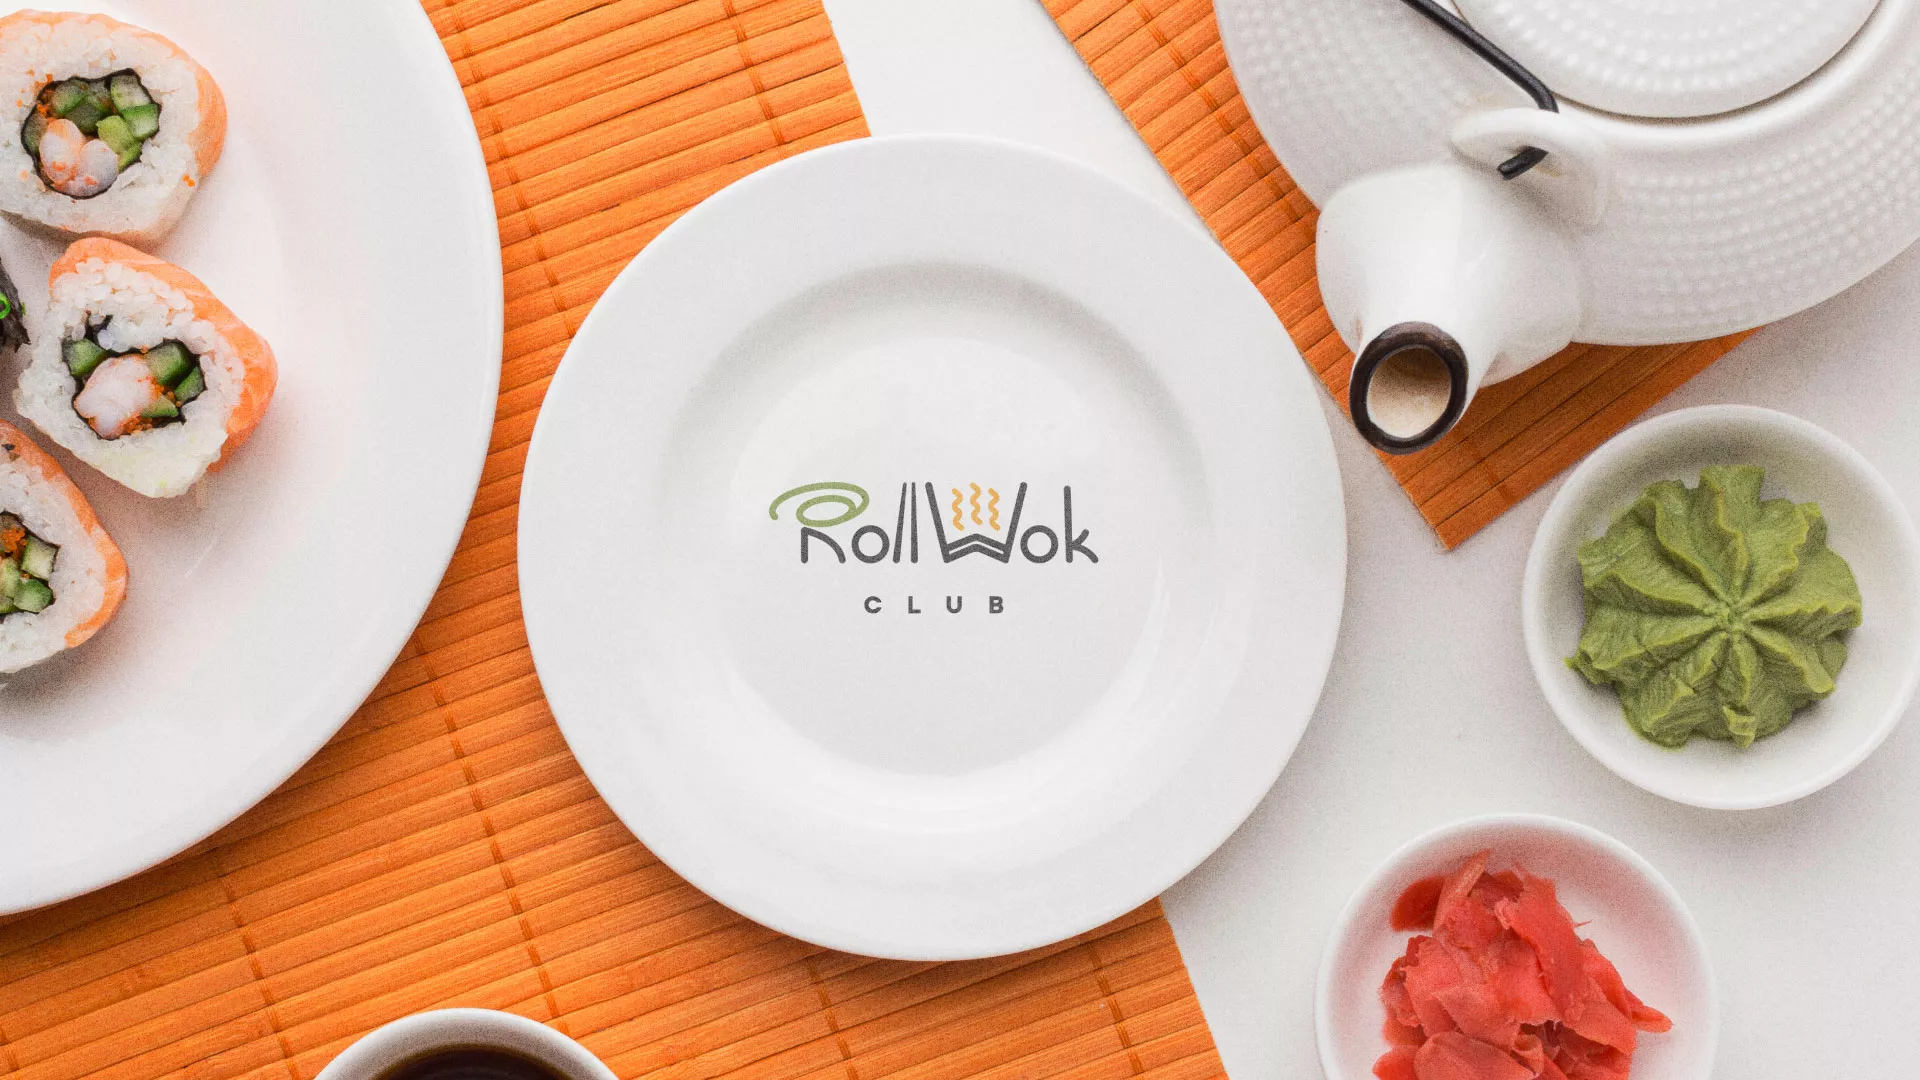 Разработка логотипа и фирменного стиля суши-бара «Roll Wok Club» в Бирюче